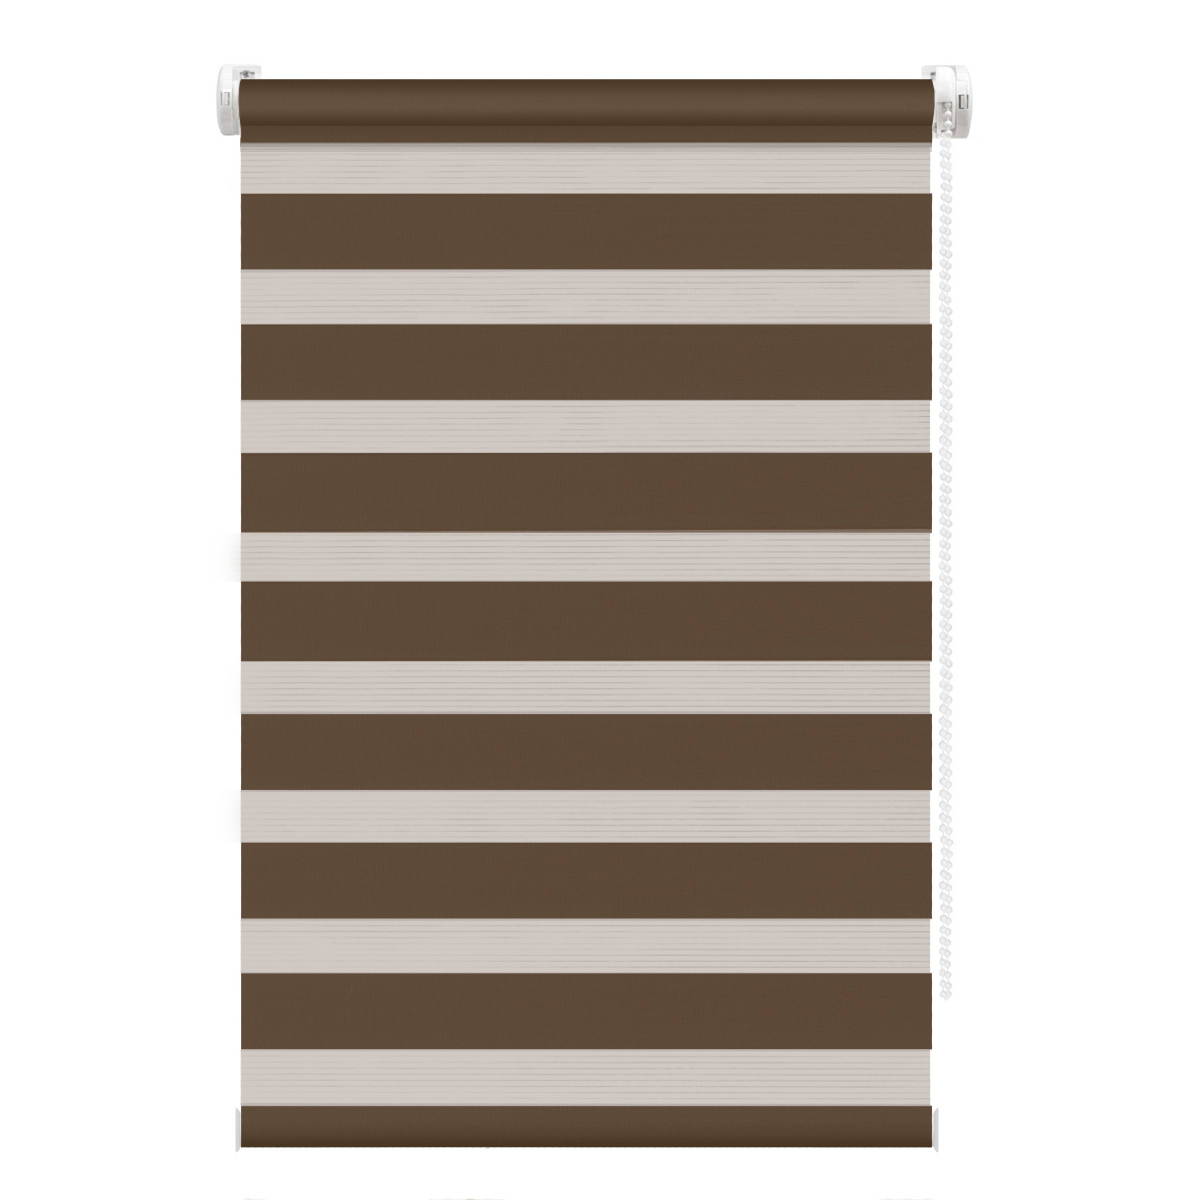 Рулонная штора FixLine Amigo Base День-Ночь коричневая 65х160 см рулонная штора fixline amigo basic коричневая 65х160 см